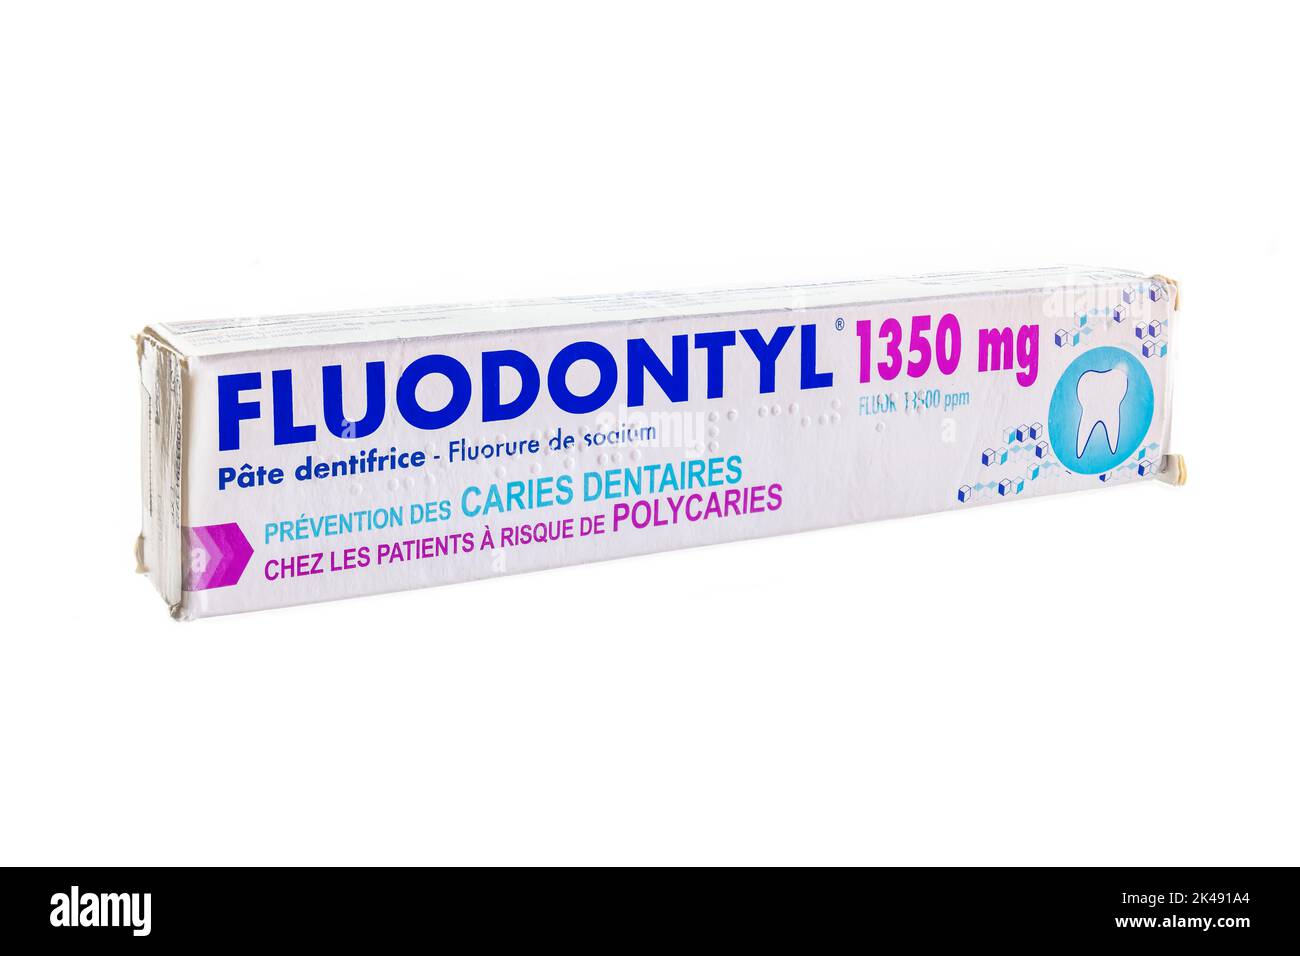 Huelva, Spanien - 30. September 2022: Fluodontyl 1350mg, sehr fluoridhaltige Zahnpasta, zur Vorbeugung von Zahnkaries, insbesondere bei gefährdeten Patienten Stockfoto